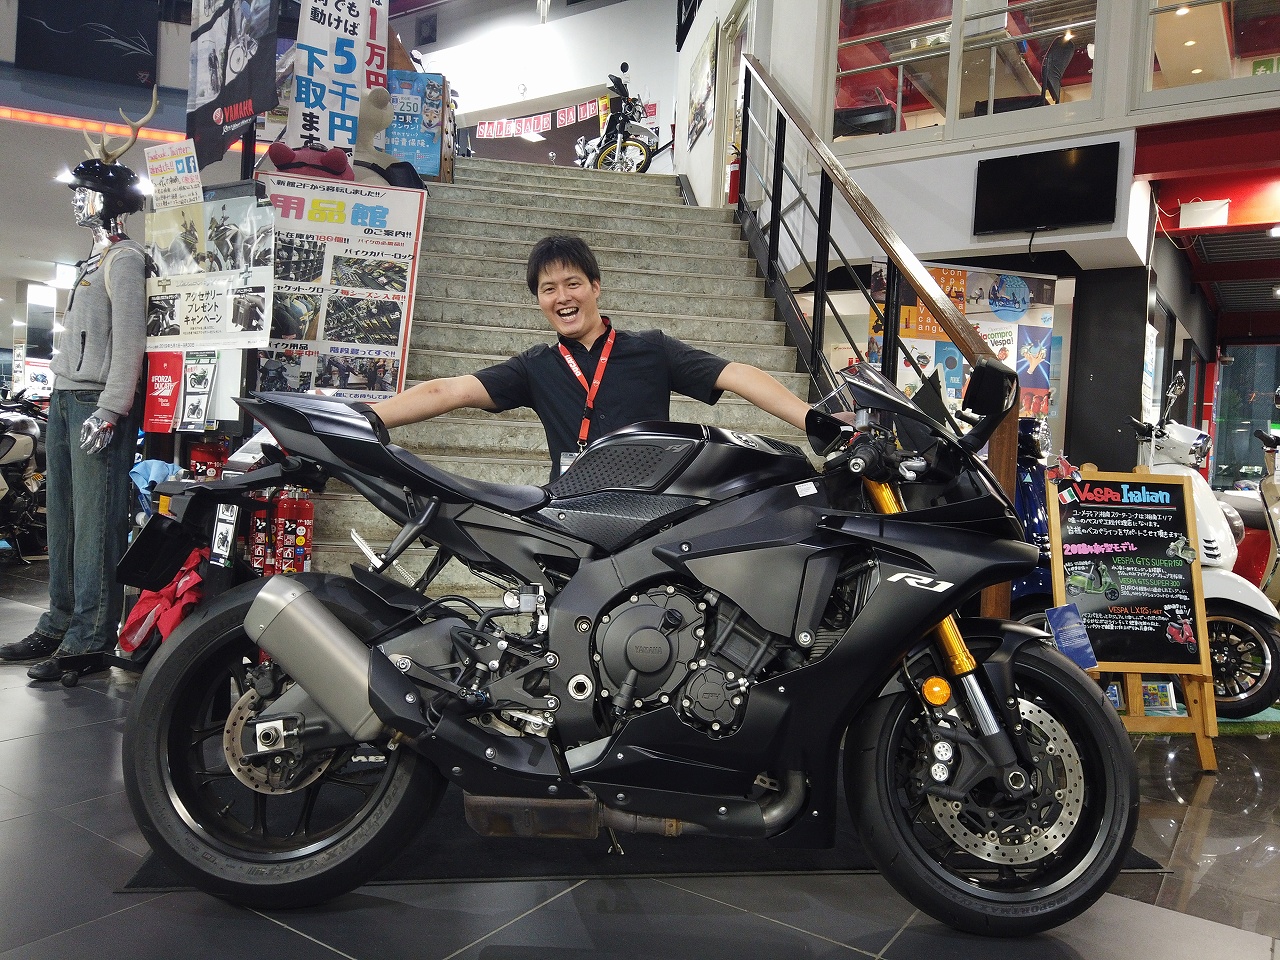 特選中古車 現行モデルyzf R1入荷しました 最新情報 U Media ユーメディア 中古 バイク 新車バイク探しの決定版 神奈川 東京でバイク探すならユーメディア